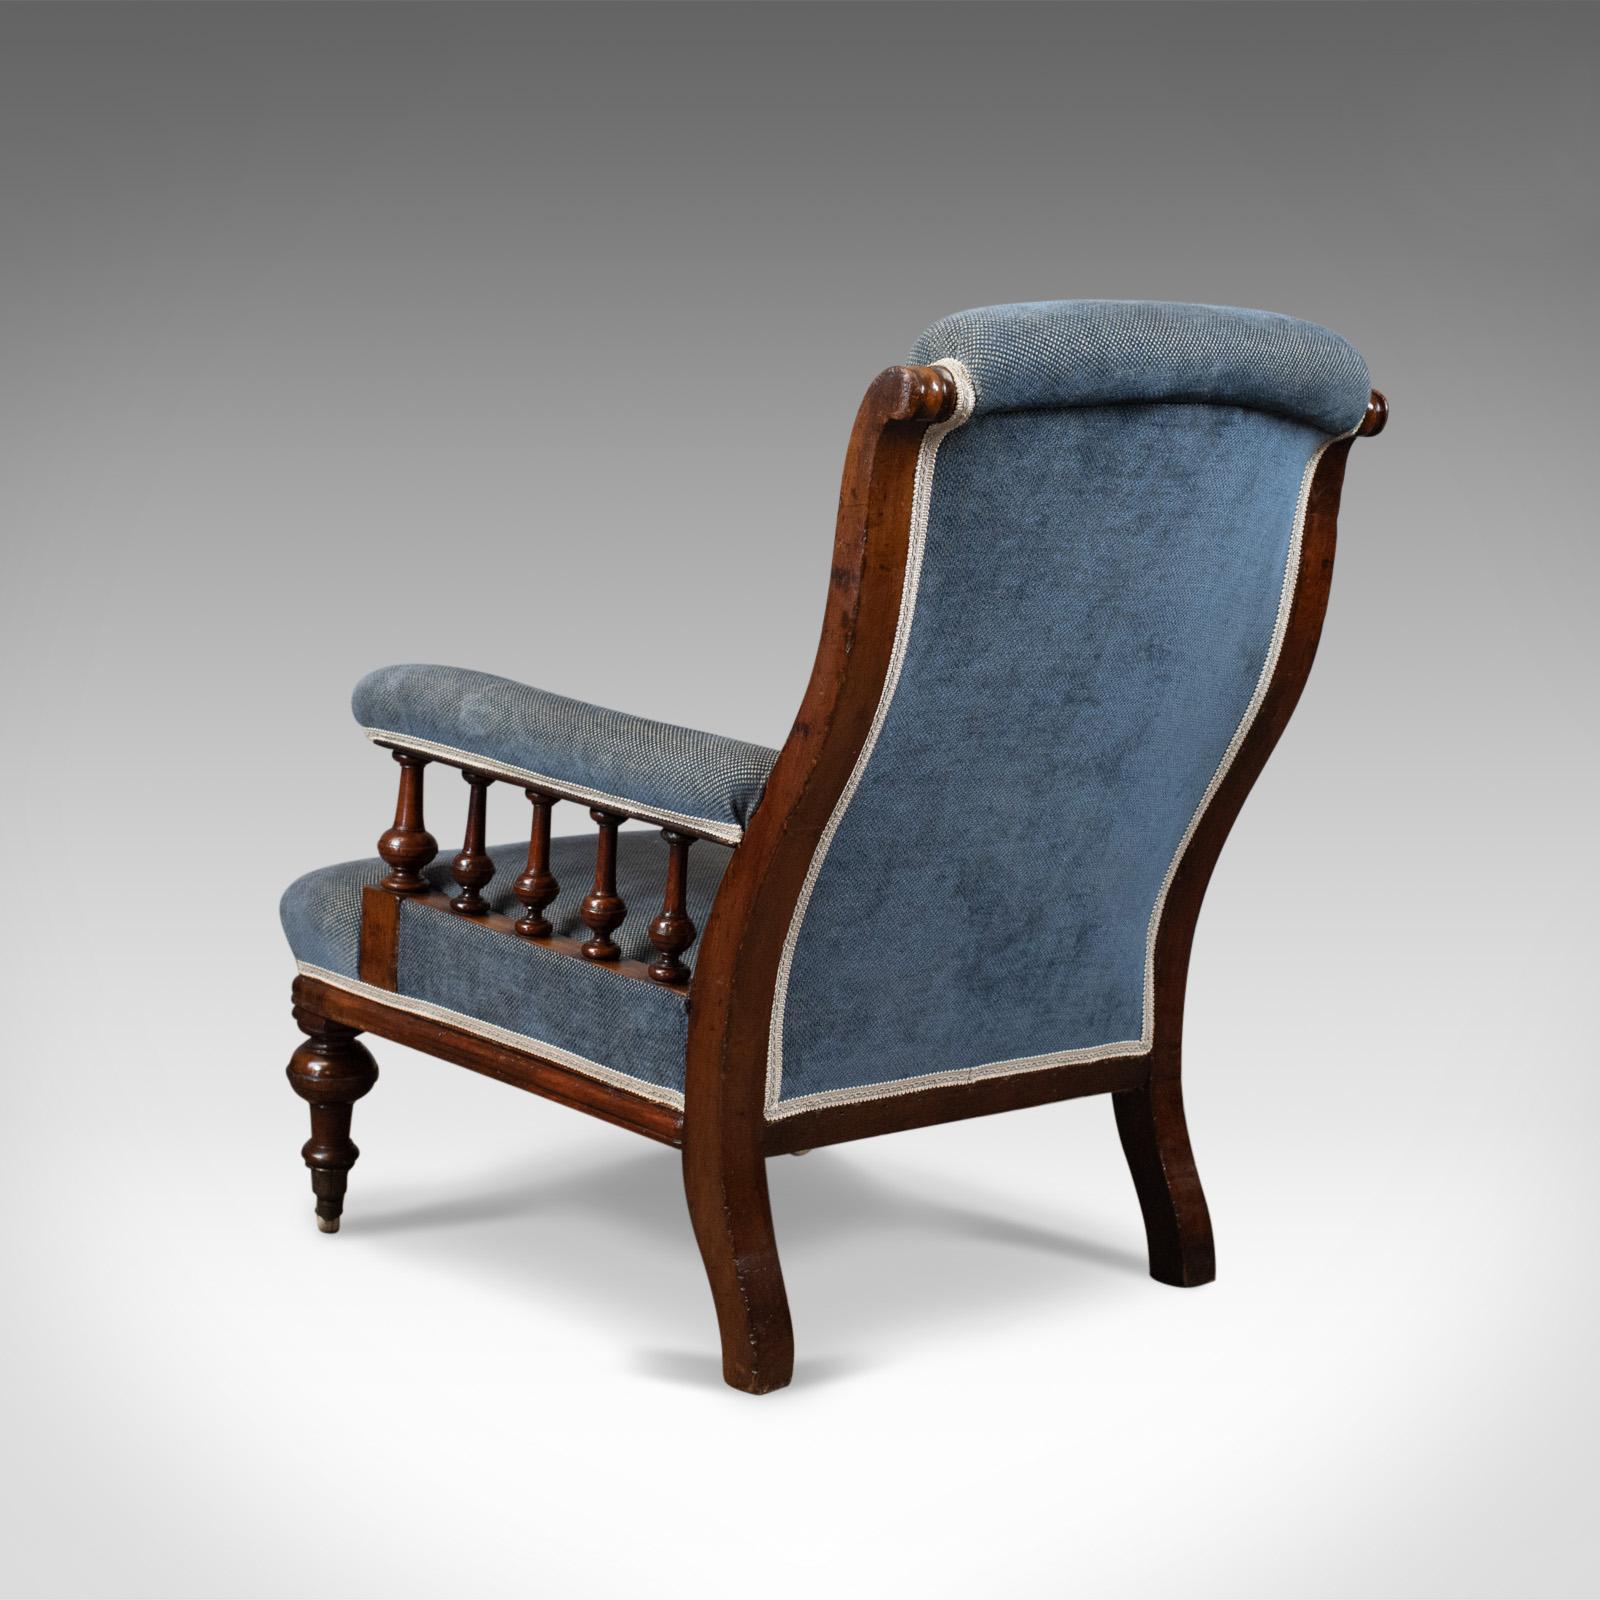 19th Century Antique Armchair, English, Victorian, Club Chair, Walnut, Blue, circa 1880